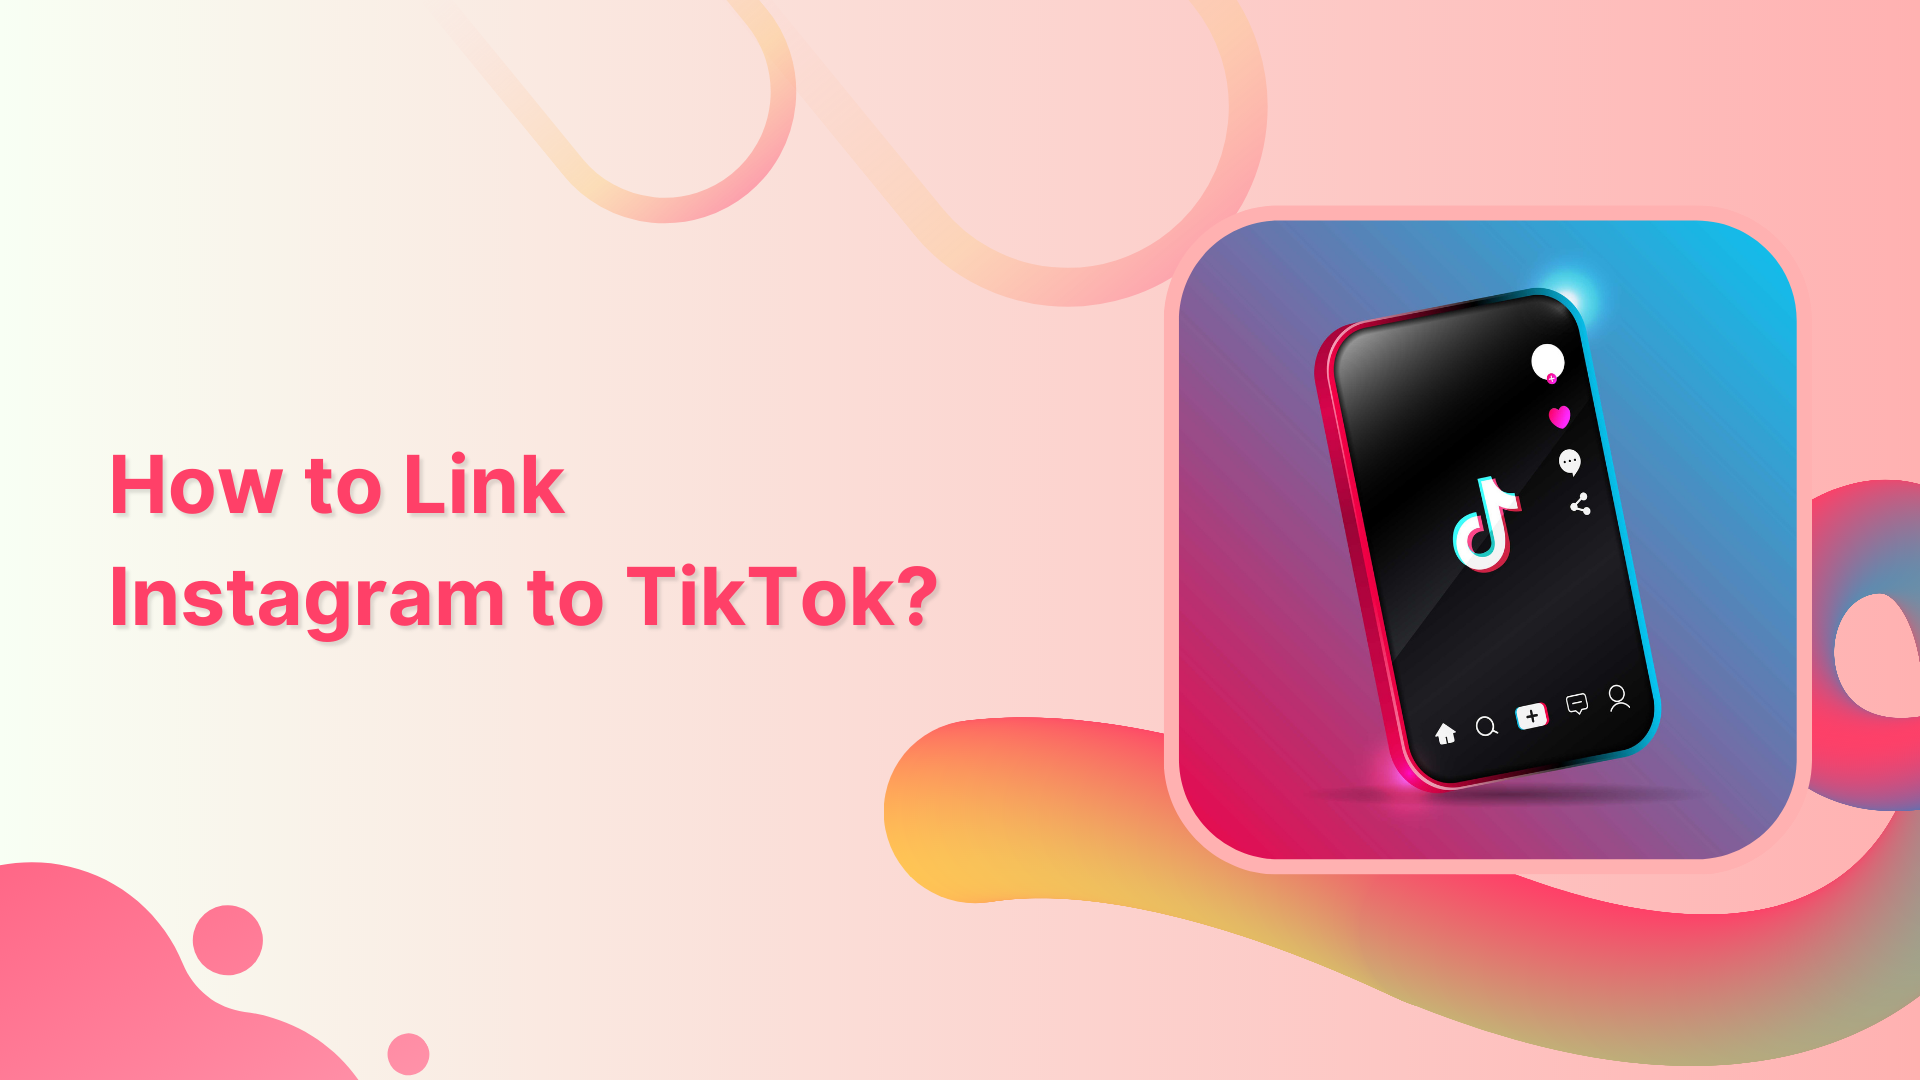 How to link Instagram to TikTok?